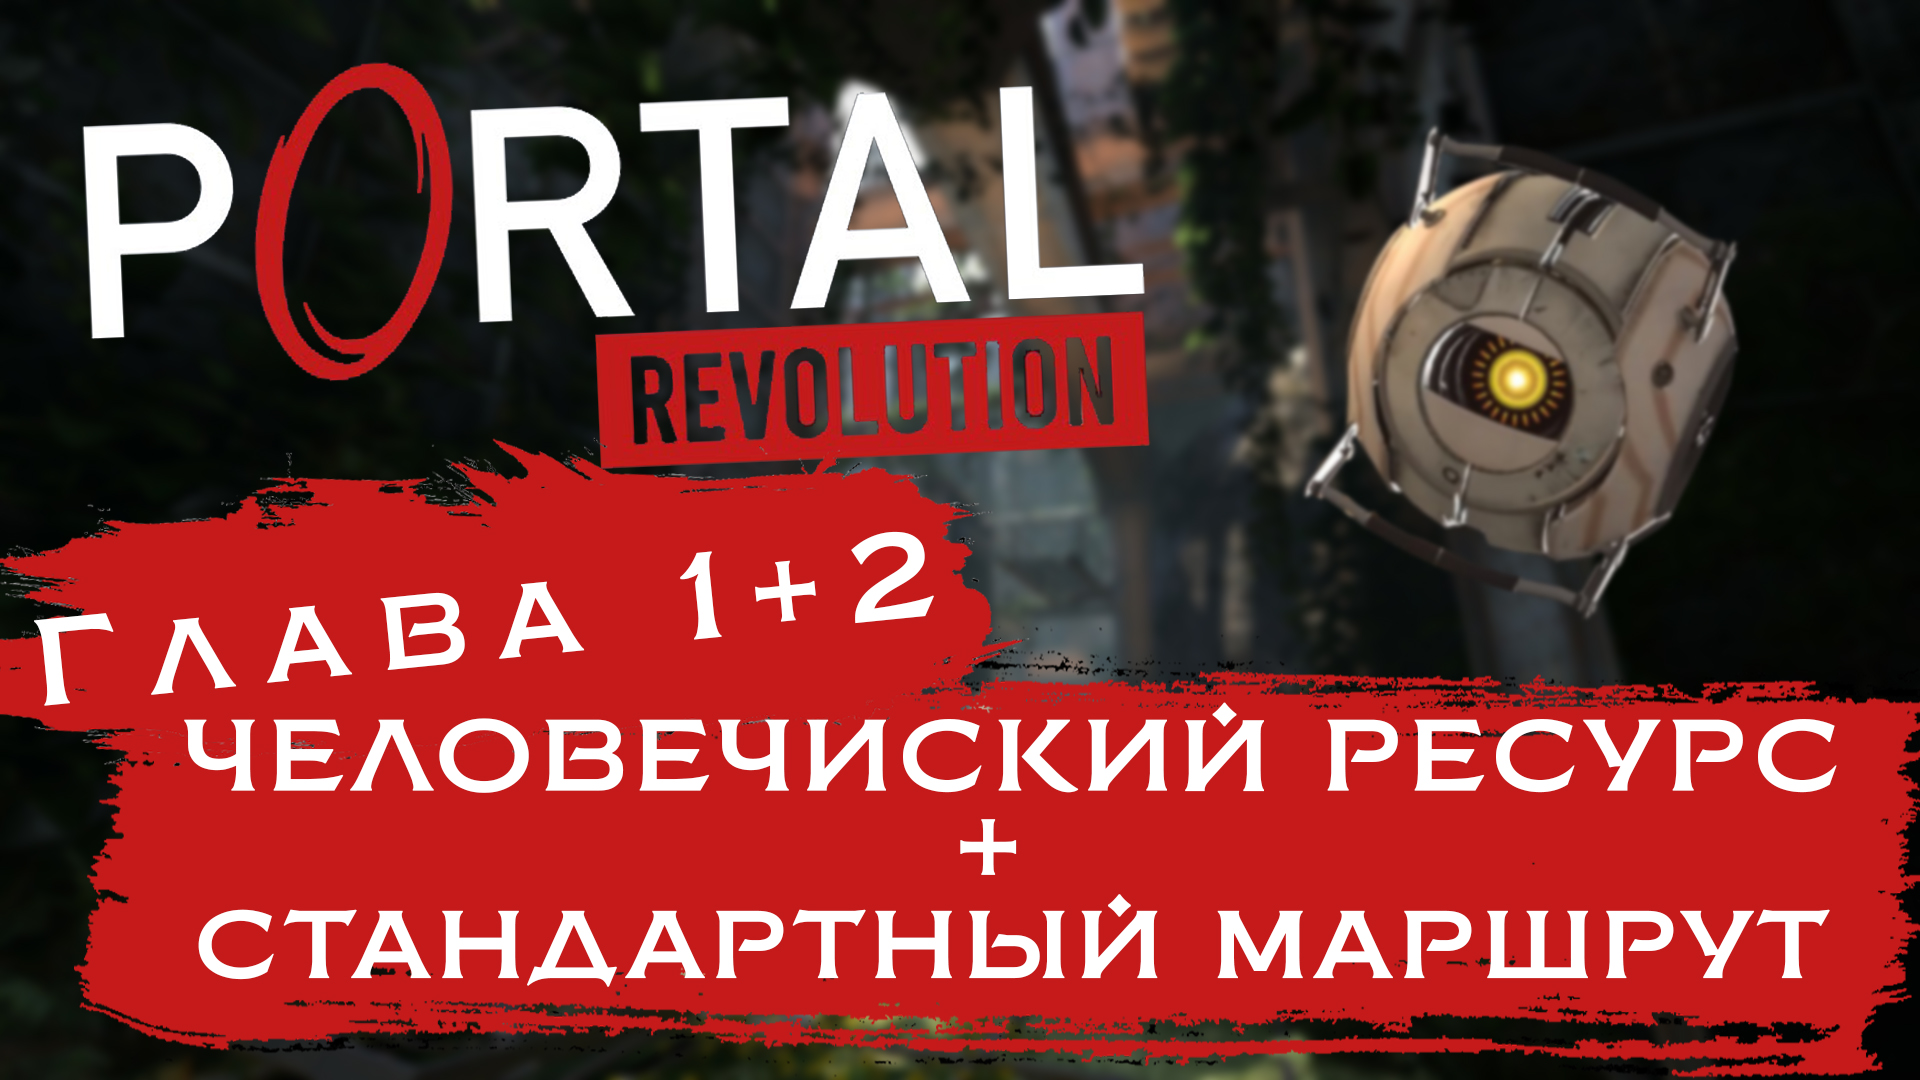 ПОКА ЧТО РЕВОЛЮЦИЮ ПОРТАЛОВ НЕ ВИДАТЬ | Portal: Revolution #2